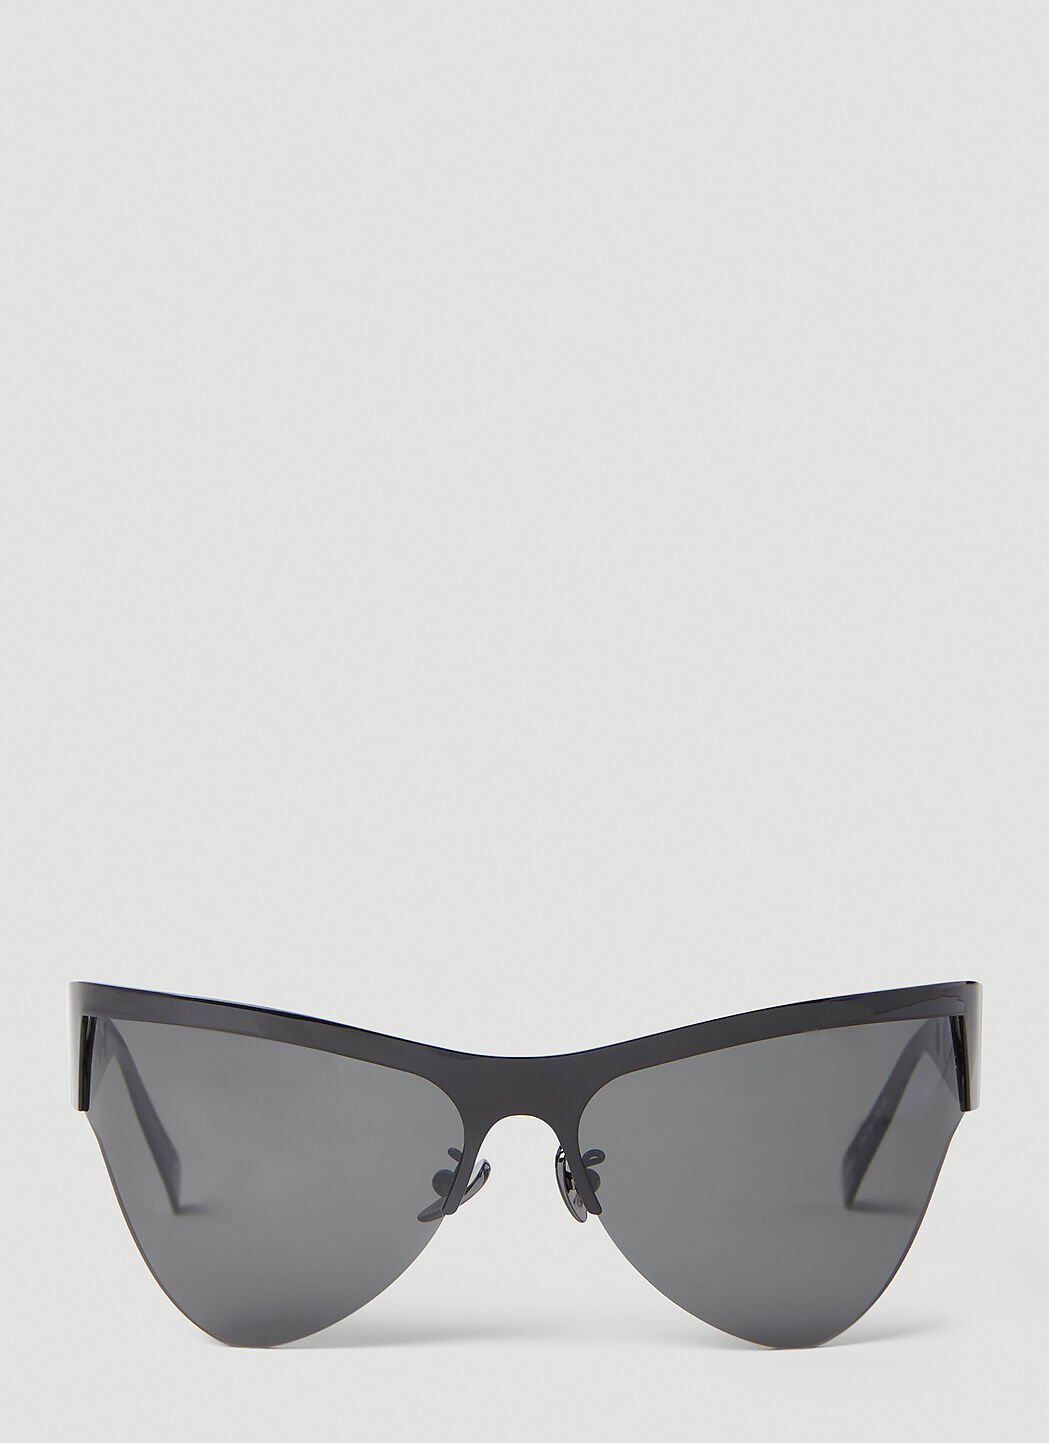 Marni Mauna Lola Sunglasses Navy mni0151035